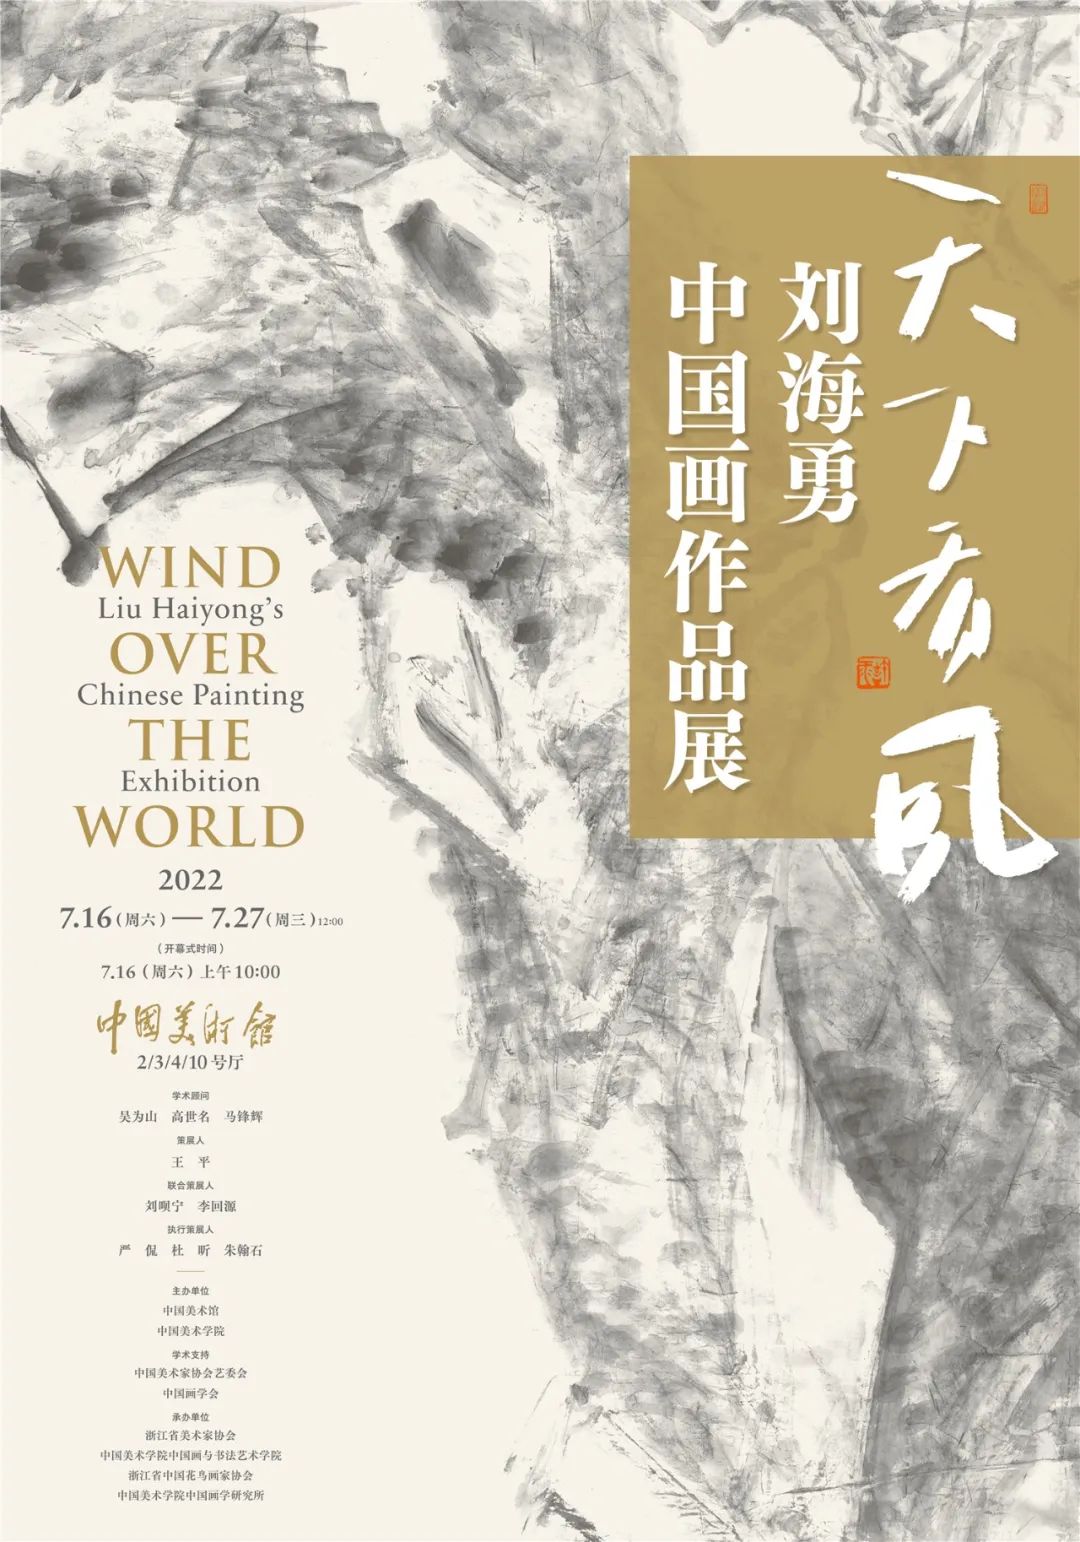 “天下有风——刘海勇中国画作品展”即将亮相中国美术馆